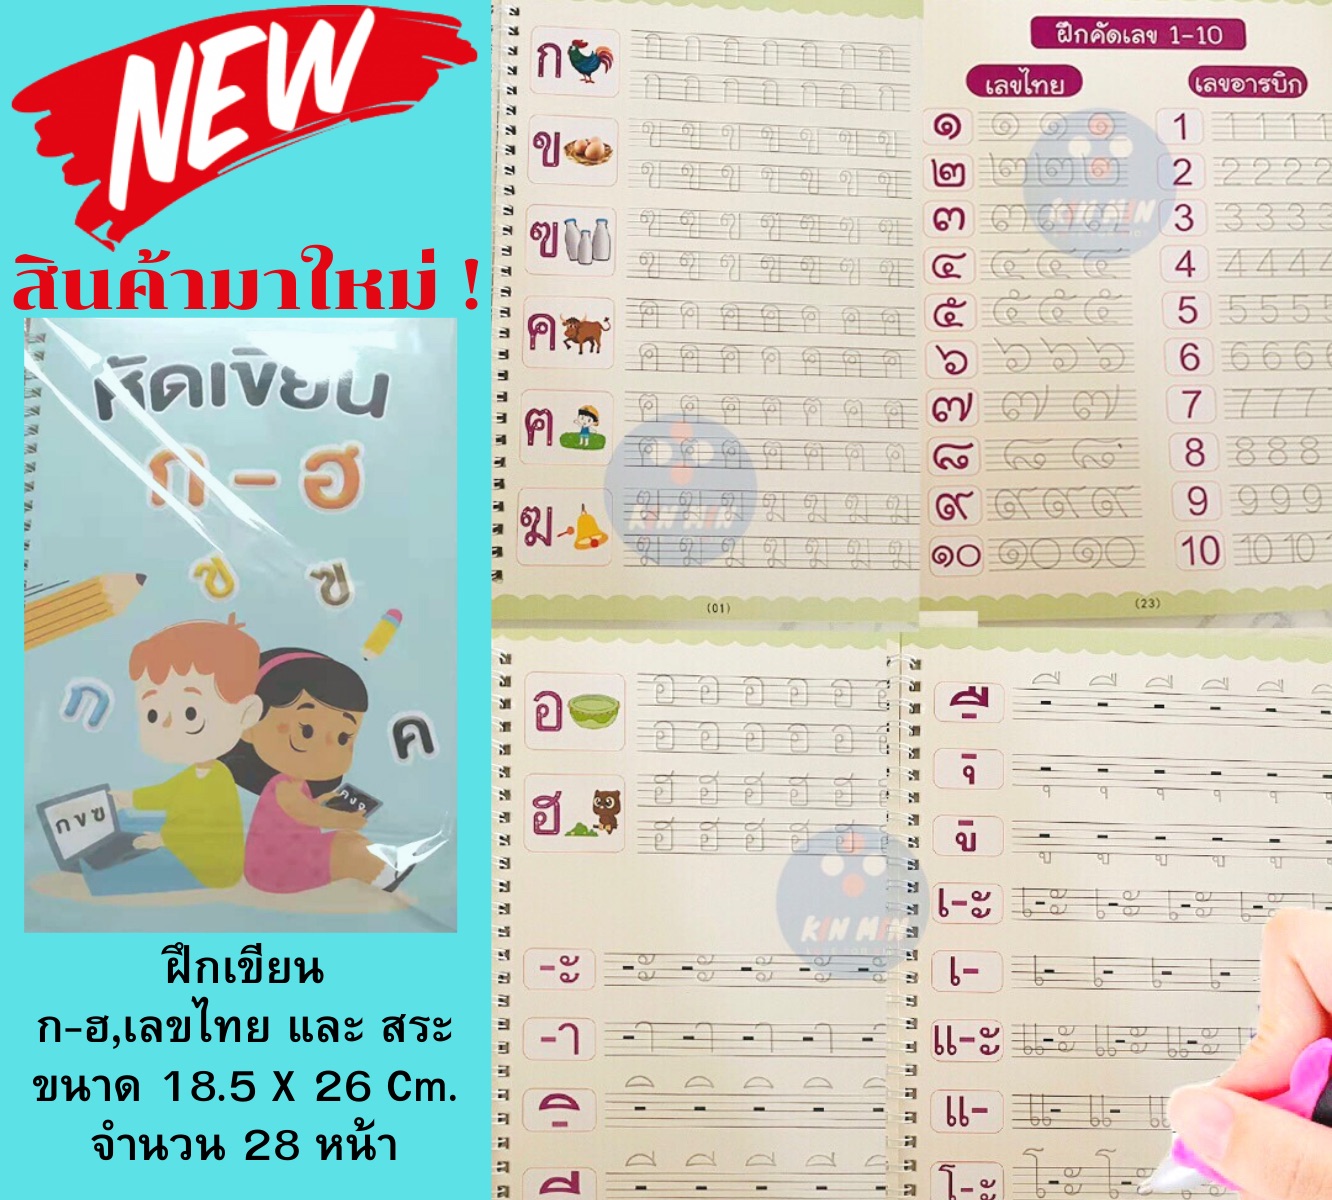 หนังสือก.ไก่ คัดลายมือ ก-ฮ หนังสือฝึกเขียน ฝึกเขียนก.ไก่ สมุดคัดลายมือ ลอกลาย หนังสือเด็ก อนุบาล ฝึกเรียน ภาษาไทย ฟรี ปากกาล่อ